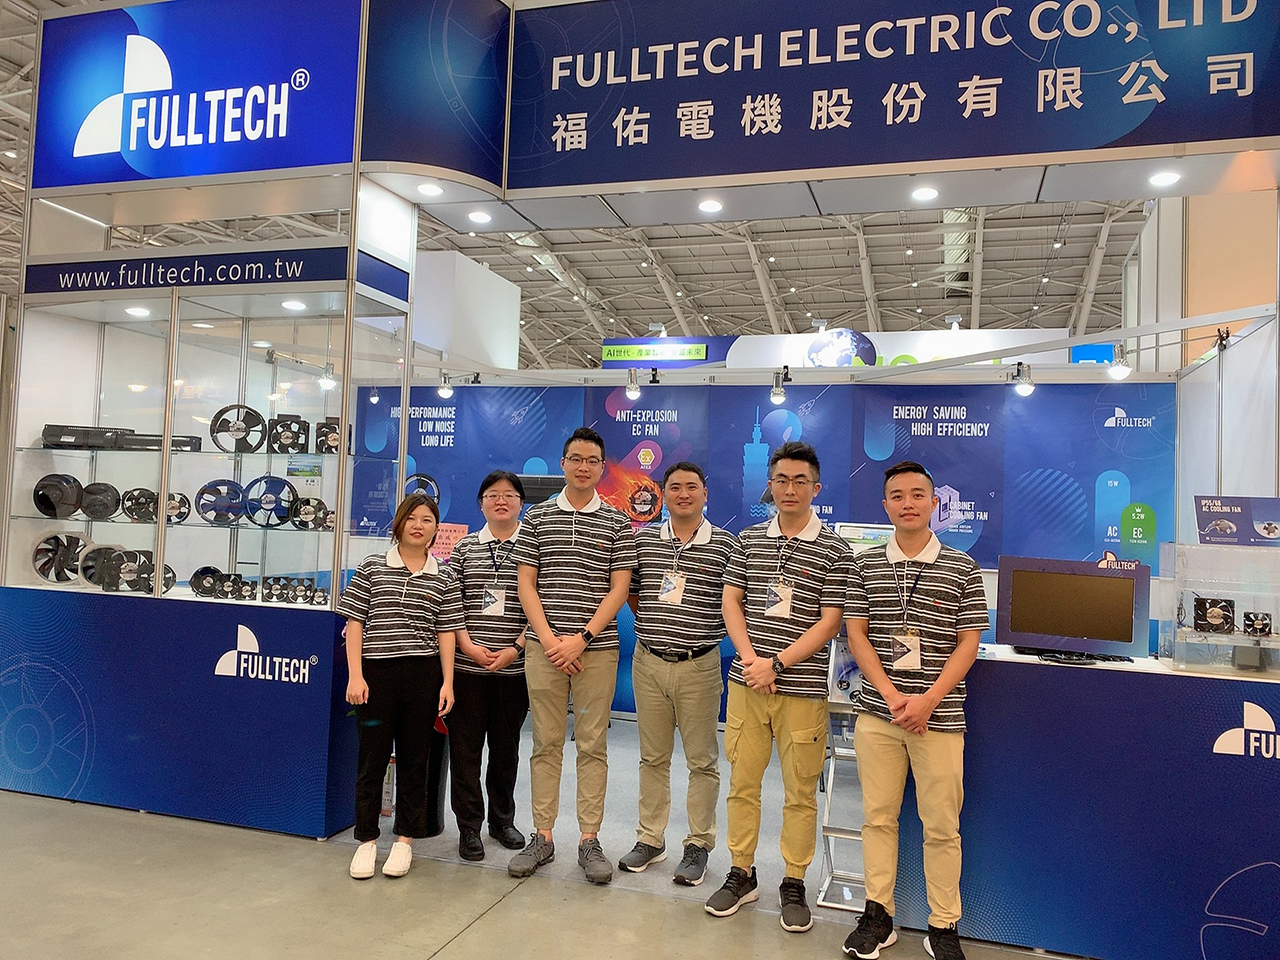 Fulltech Electric wird an der Taipei International Industrial Automation Exhibition 2019 teilnehmen. Bitte besuchen Sie uns vom 21. bis 24. August am Stand Nr. L1329 (4F).